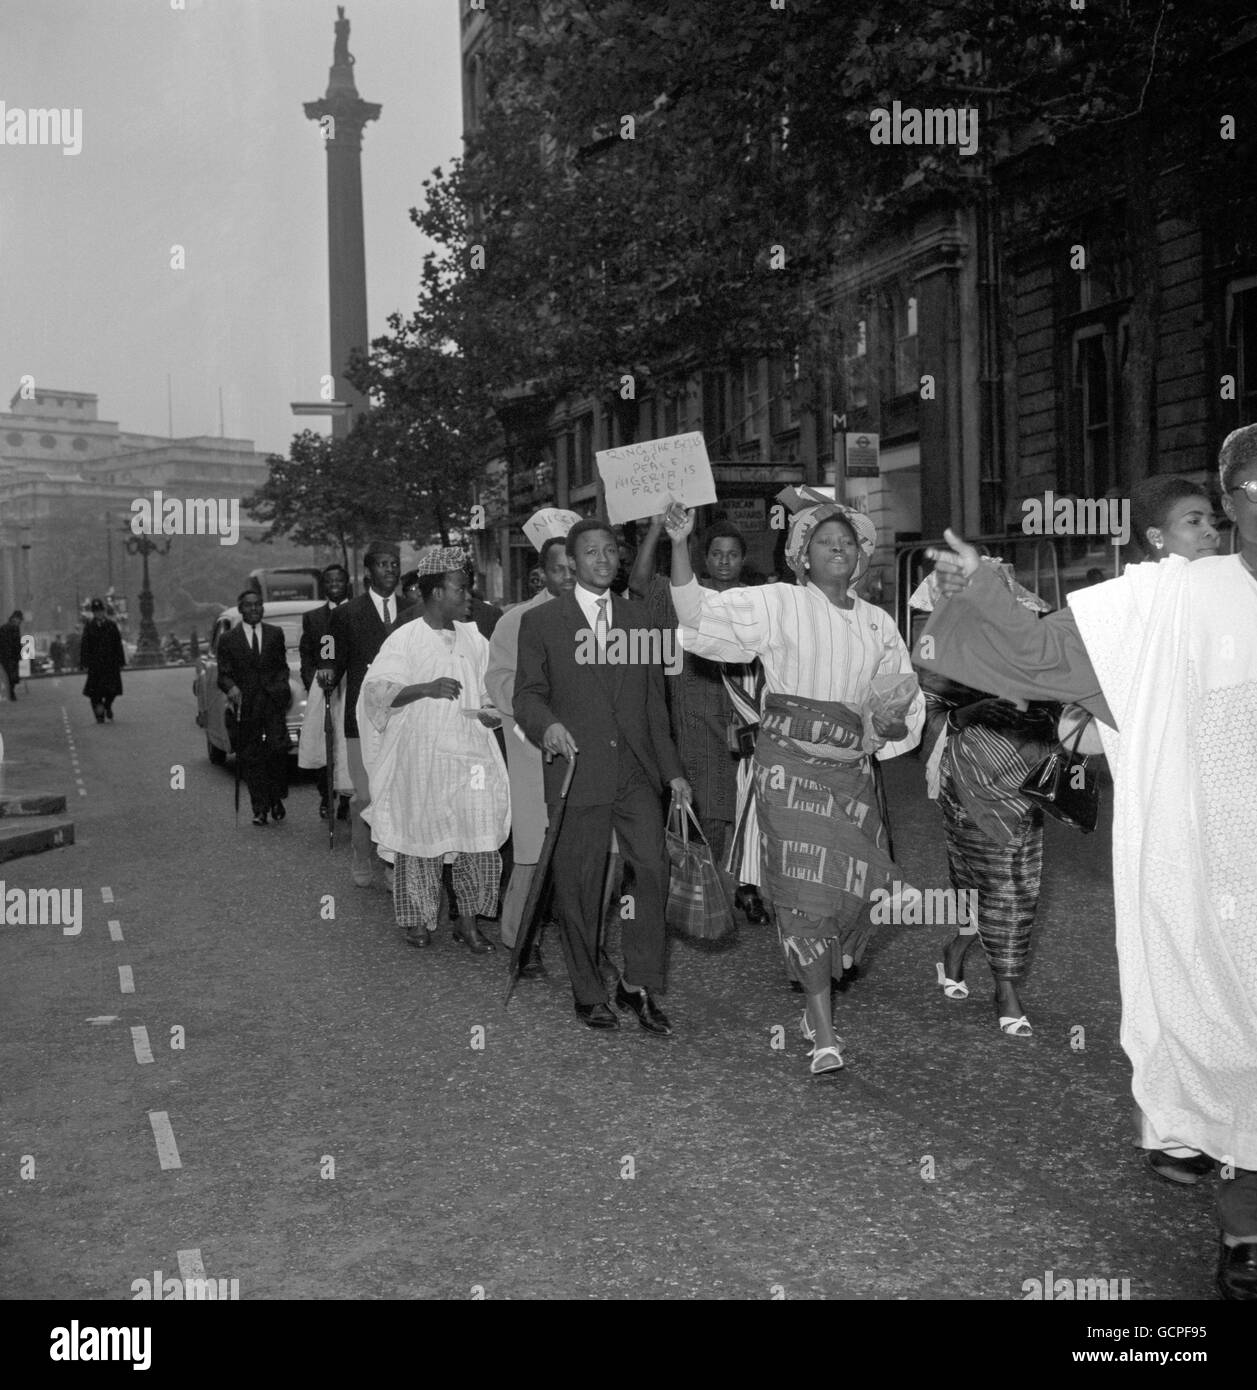 Fröhlich singen und tanzen sich entlang der Northumberland Avenue, London, die Nigerianer feiern die Unabhängigkeit ihres Landes, die am 1. Oktober 1960 stattfindet. Stockfoto